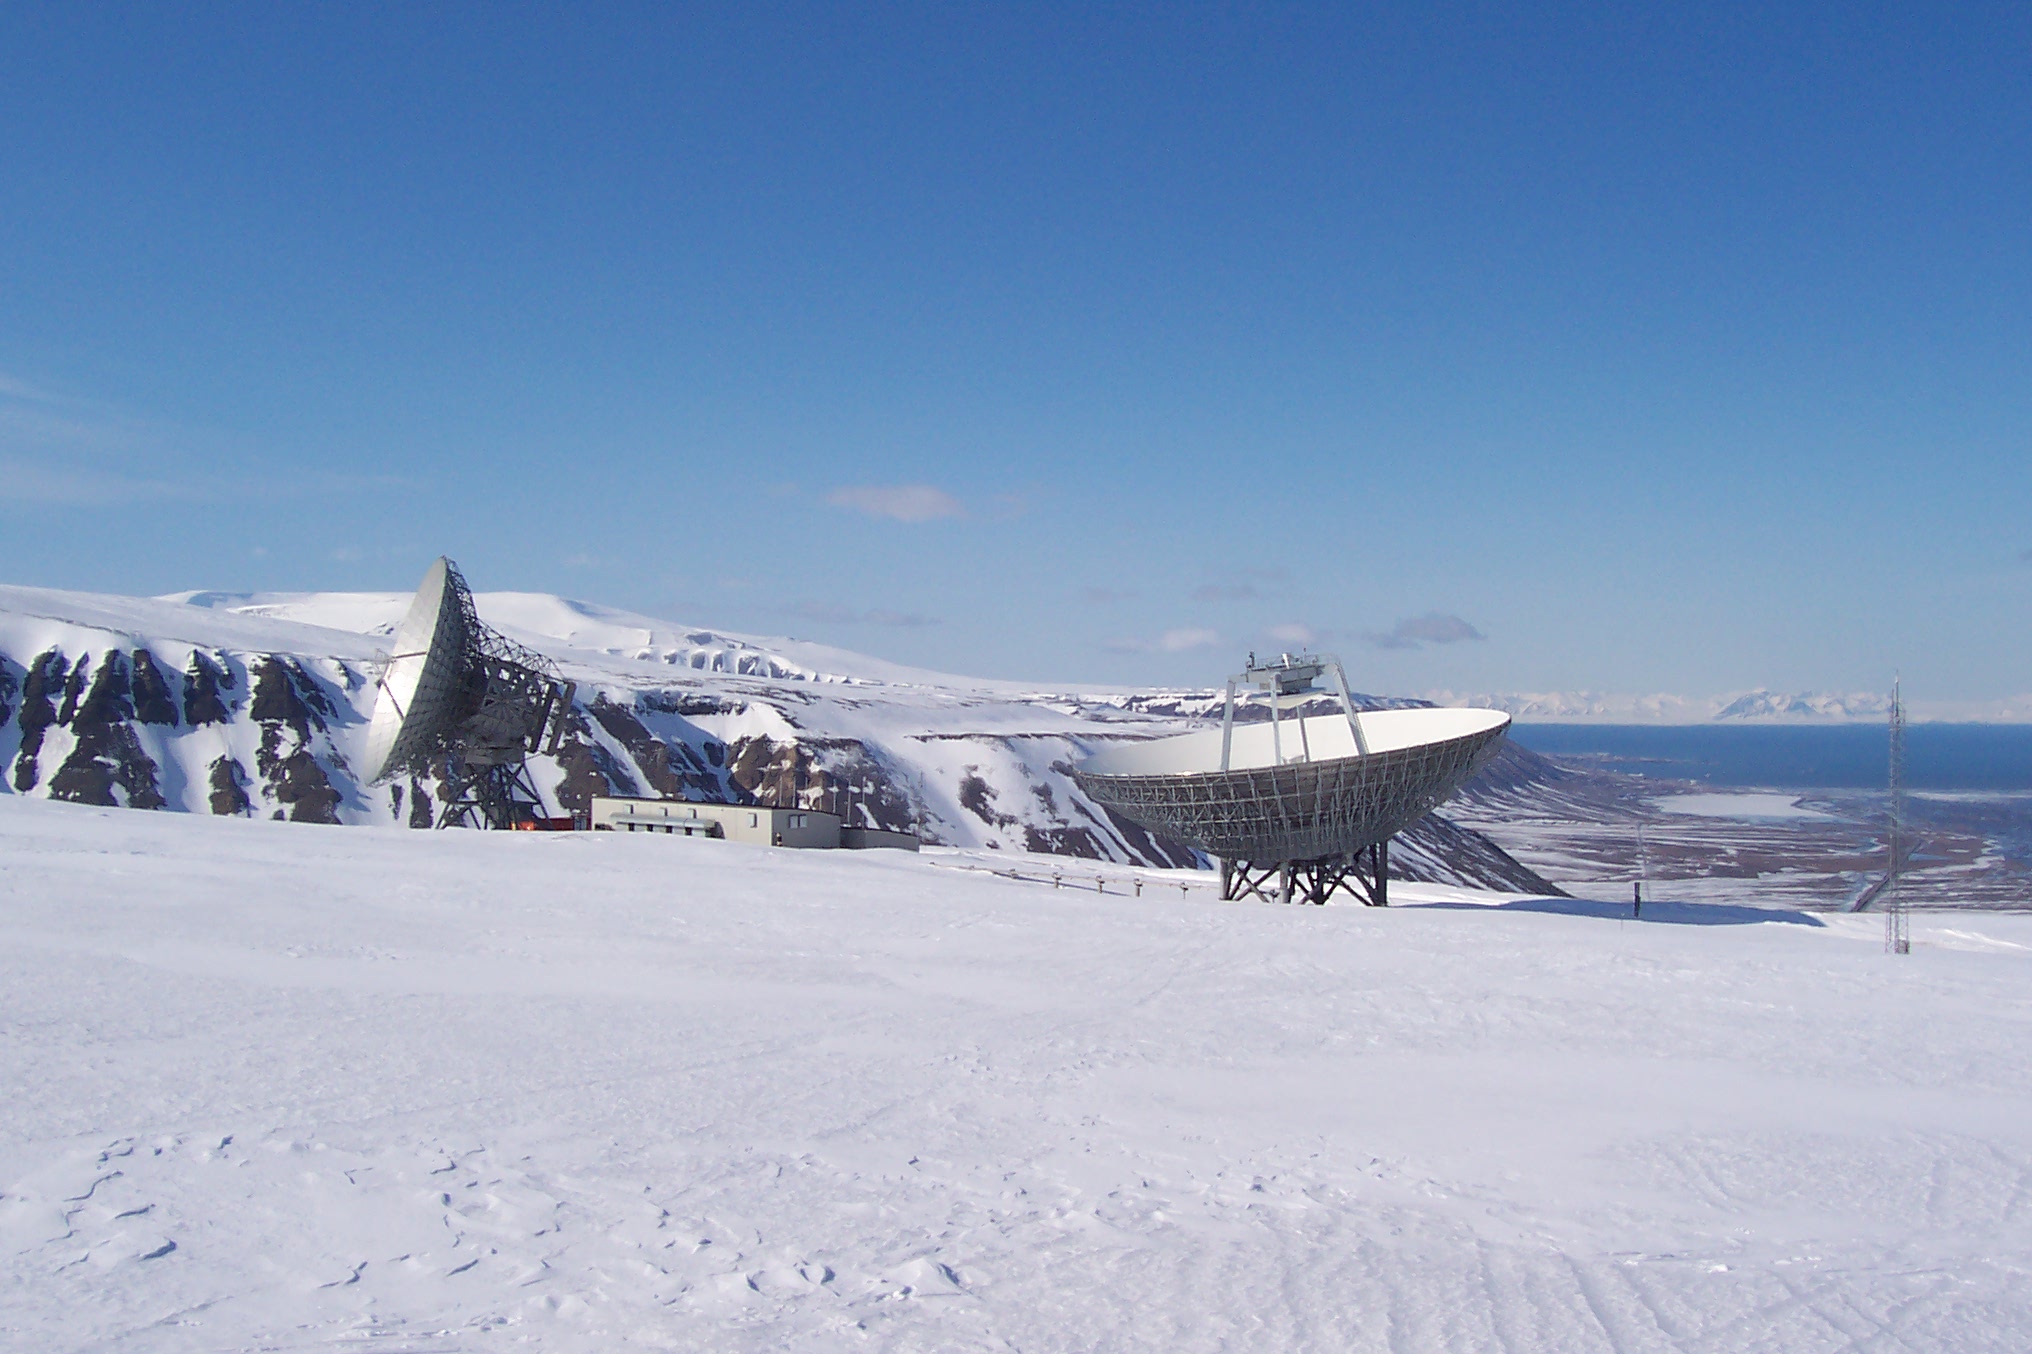 satelite dish, spitsbergen 80 degrees north, Narvik